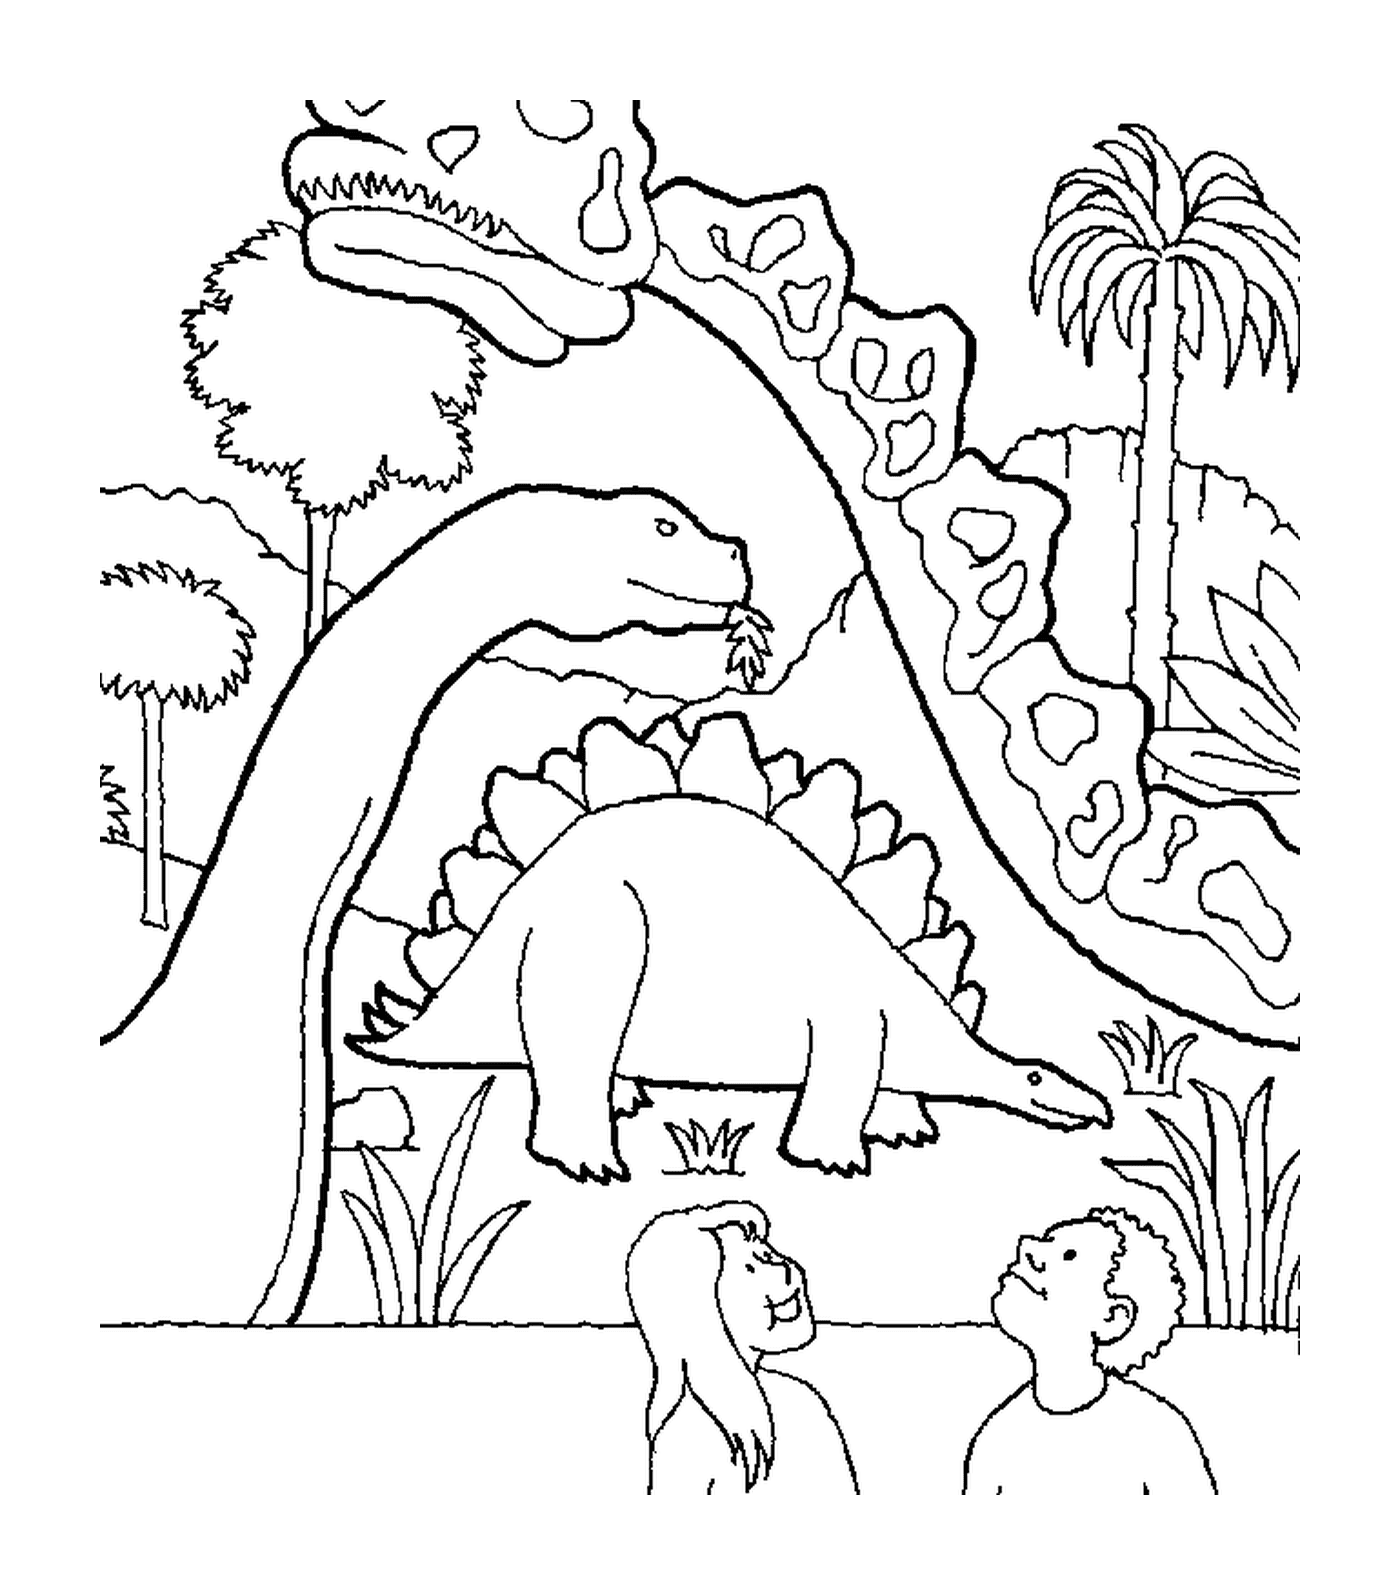  Динозавр, окруженный двумя другими динозаврами 